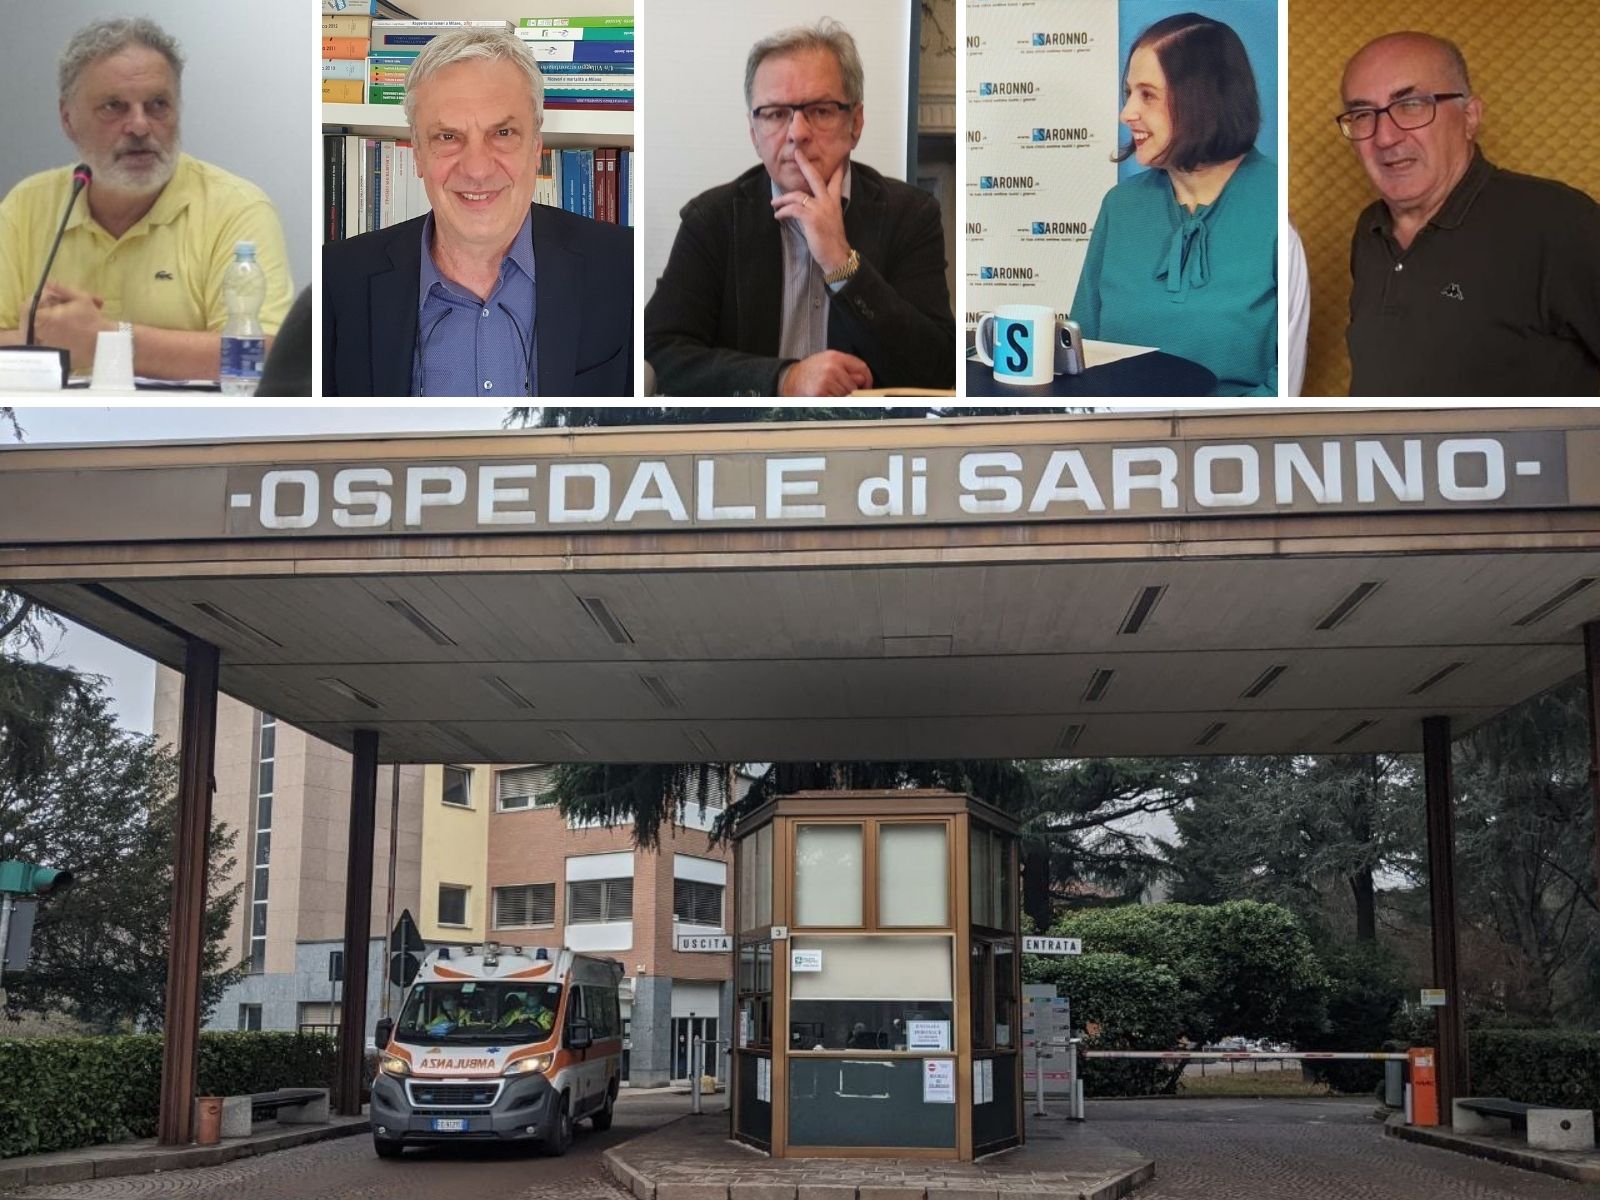 Ospedale di Saronno, domani l’incontro “per le risposte” con Porfido, Arici e Beneggi su Radiorizzonti e ilSaronno